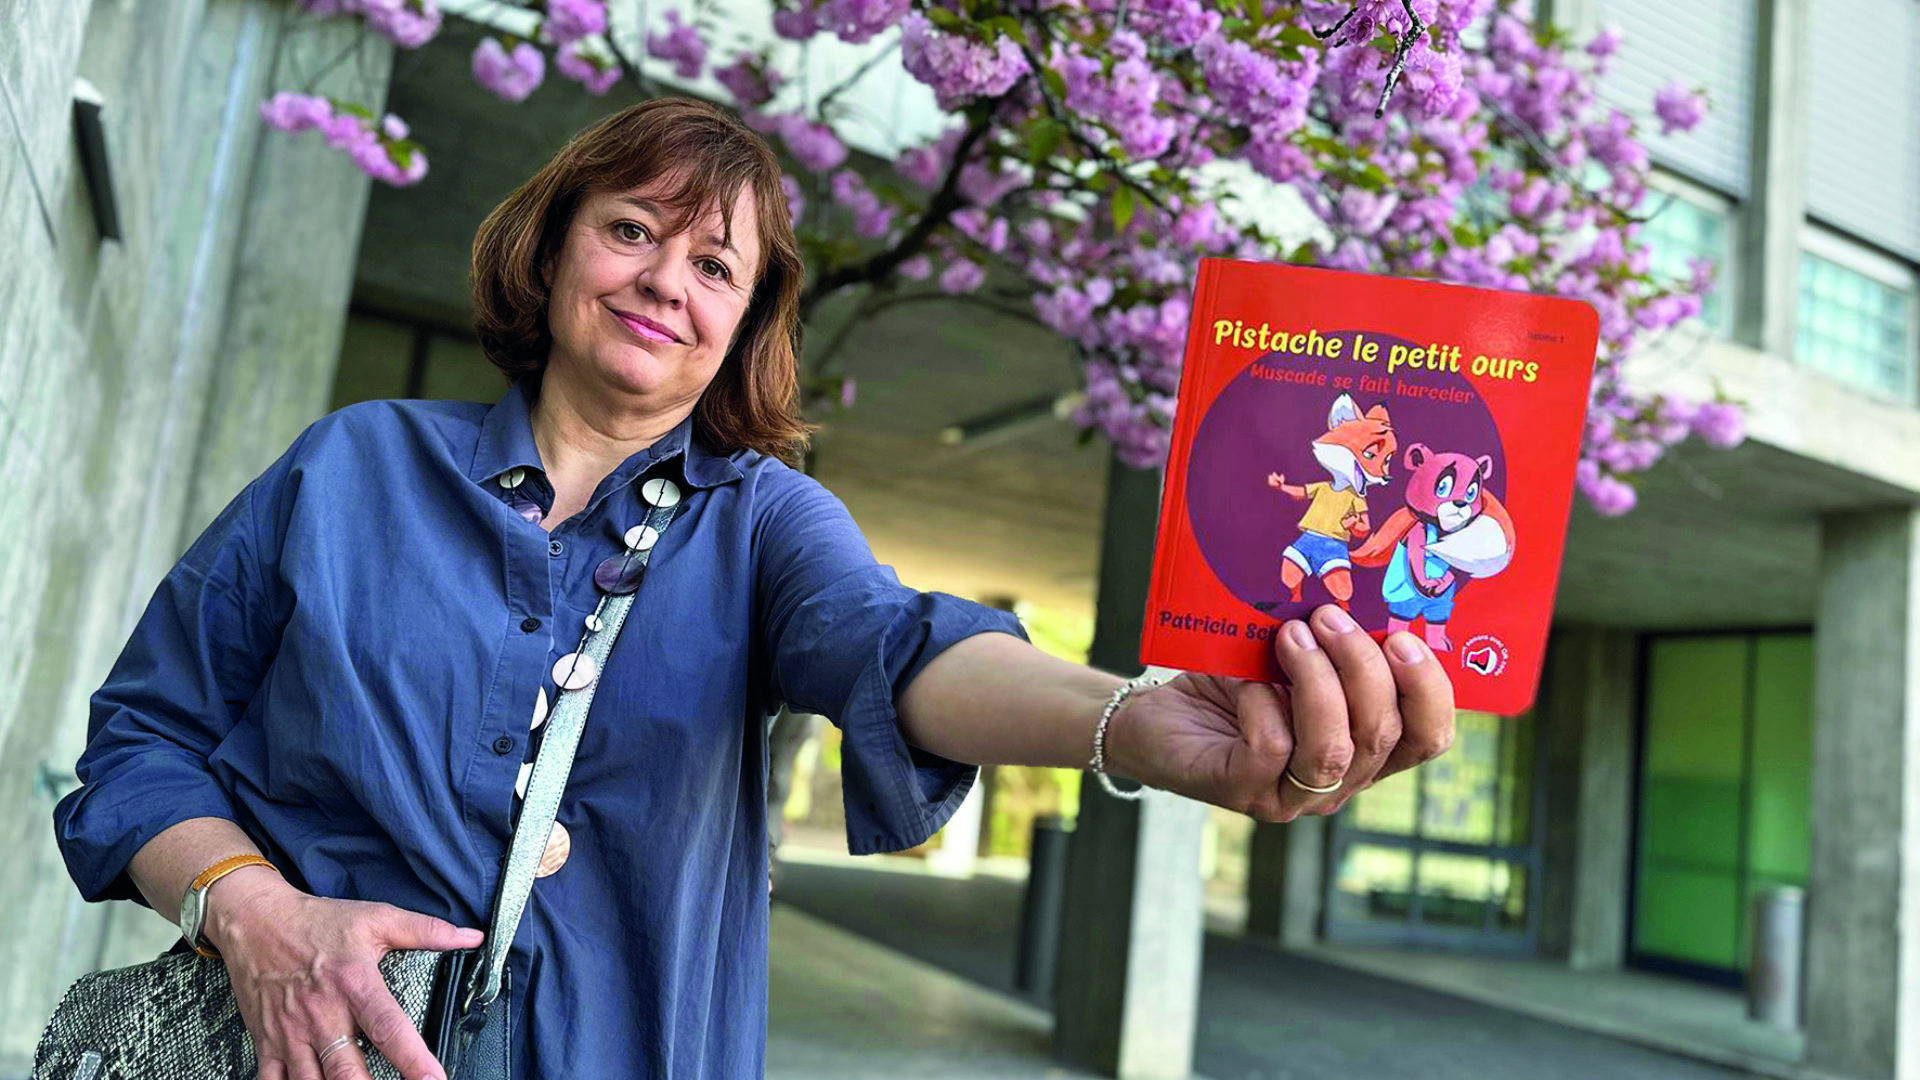 Avec son livre, Patricia Schaad veut libérer la parole des élèves victimes de harcèlement. (dr)